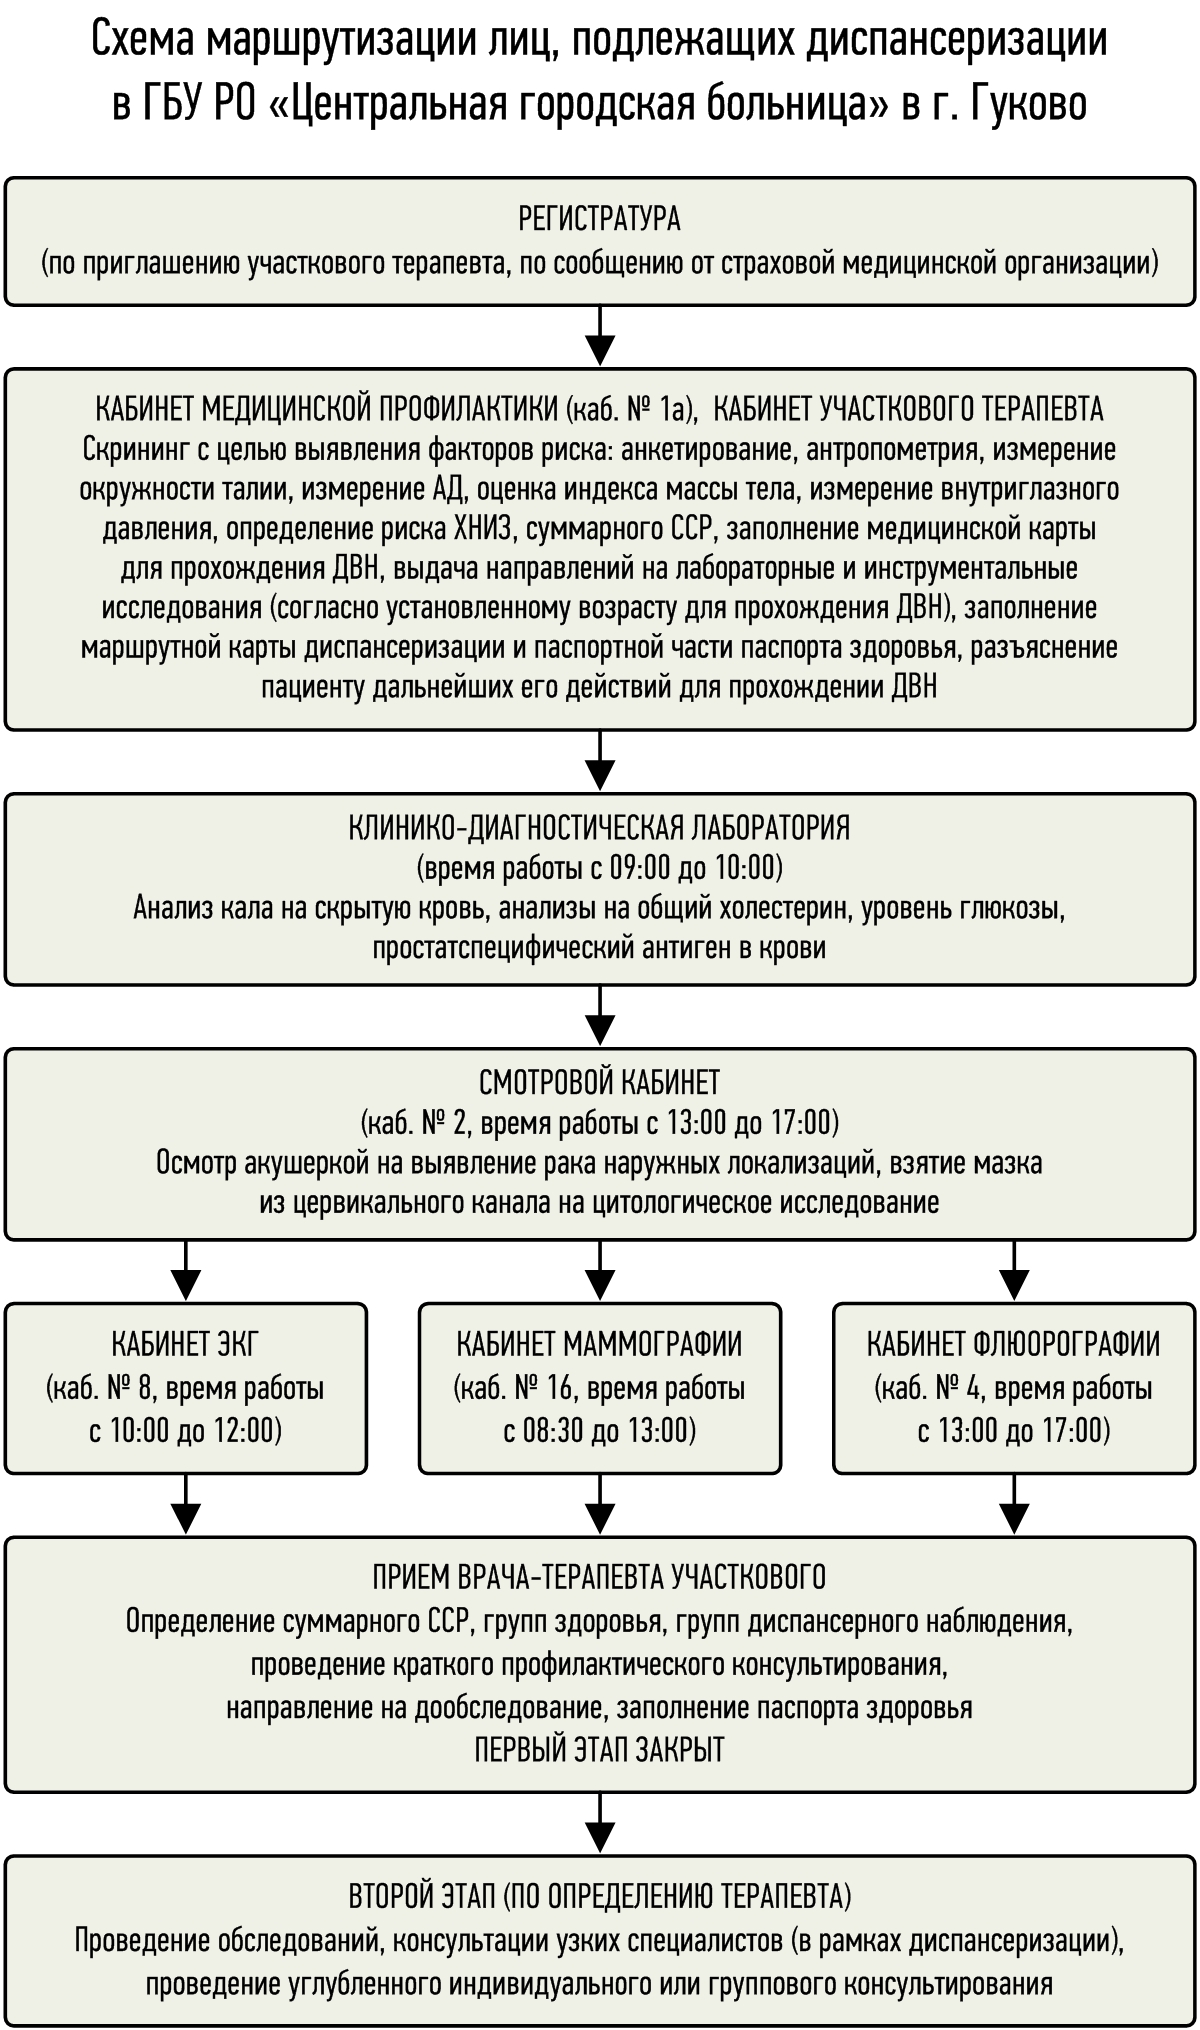 Схема маршрутизации лиц, подлежащих диспансеризации  в МБУЗ «Центральная городская больница» г. Гуково